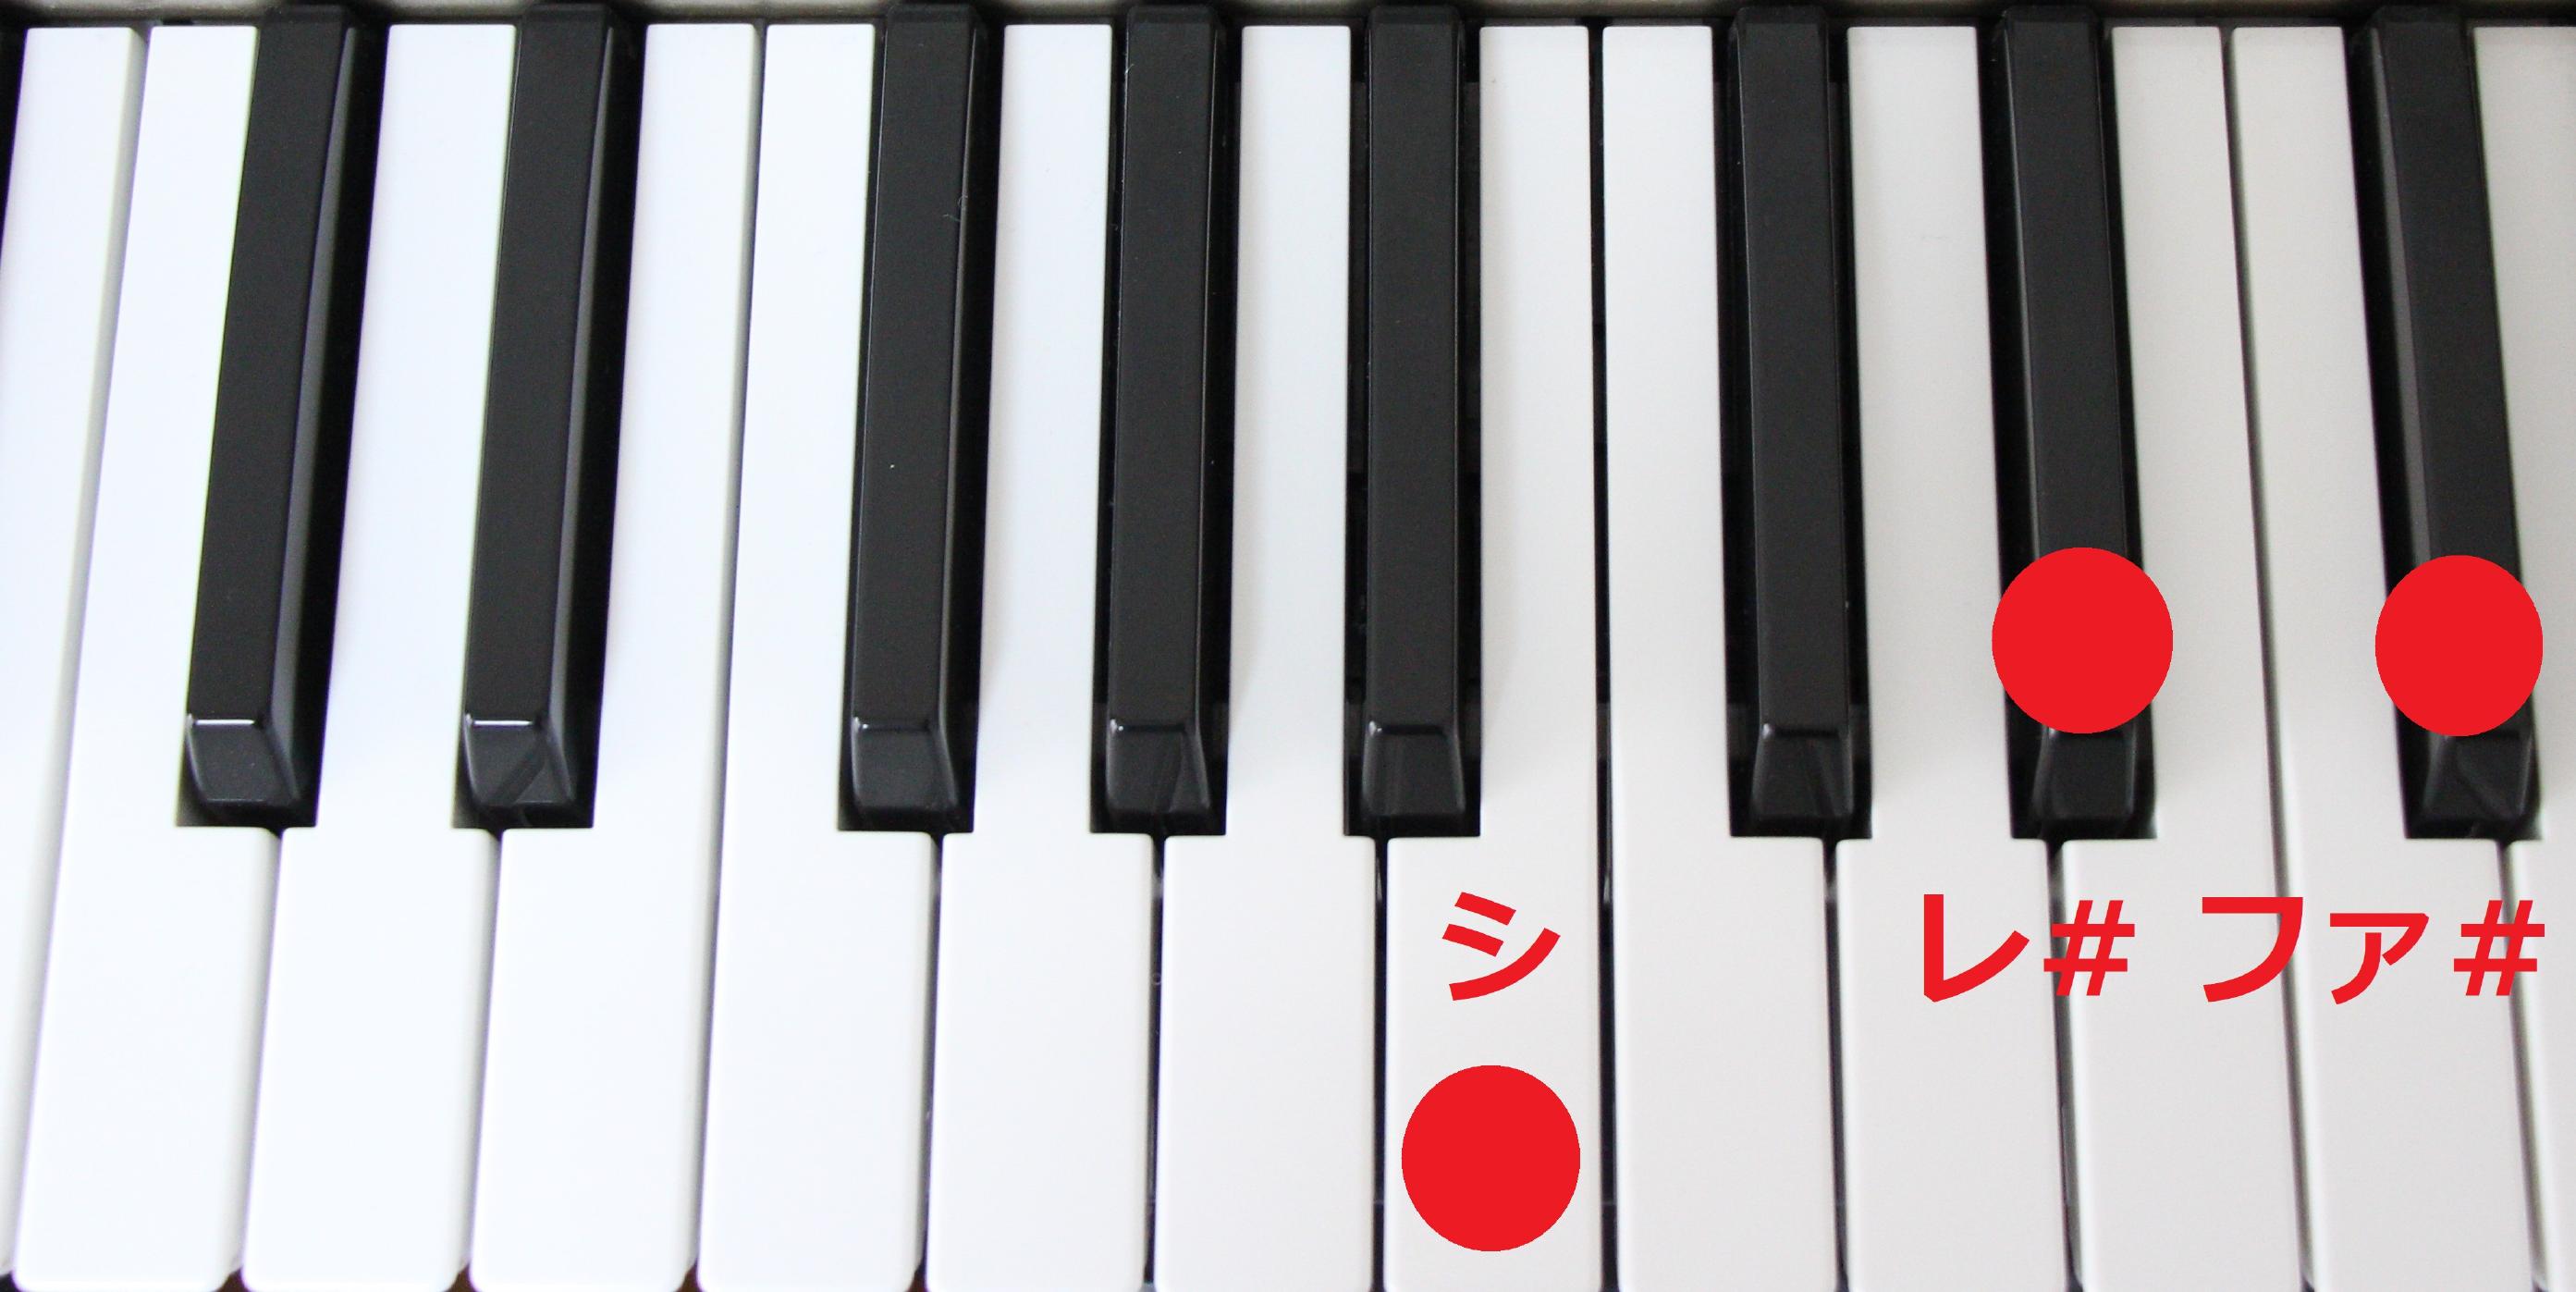 ピアノコードの簡単な覚え方と練習法 解説画像 動画付き 大人のピアノ初心者が上達する練習方法を解説するブログ